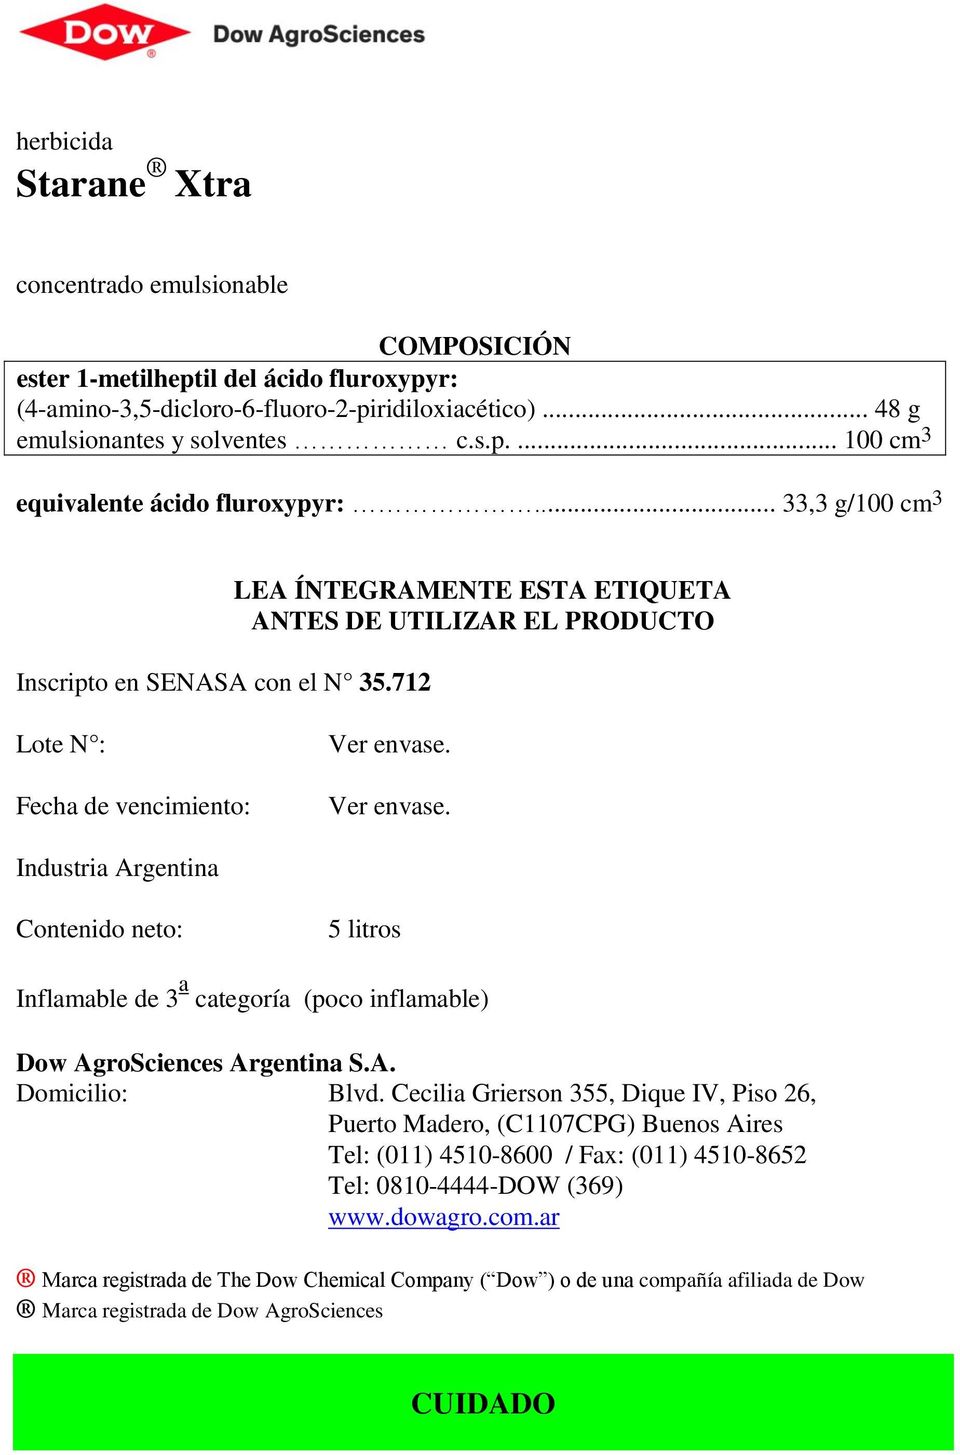 Ver envase. Industria Argentina Contenido neto: 5 litros Inflamable de 3 a categoría (poco inflamable) Dow AgroSciences Argentina S.A. Domicilio: Blvd.